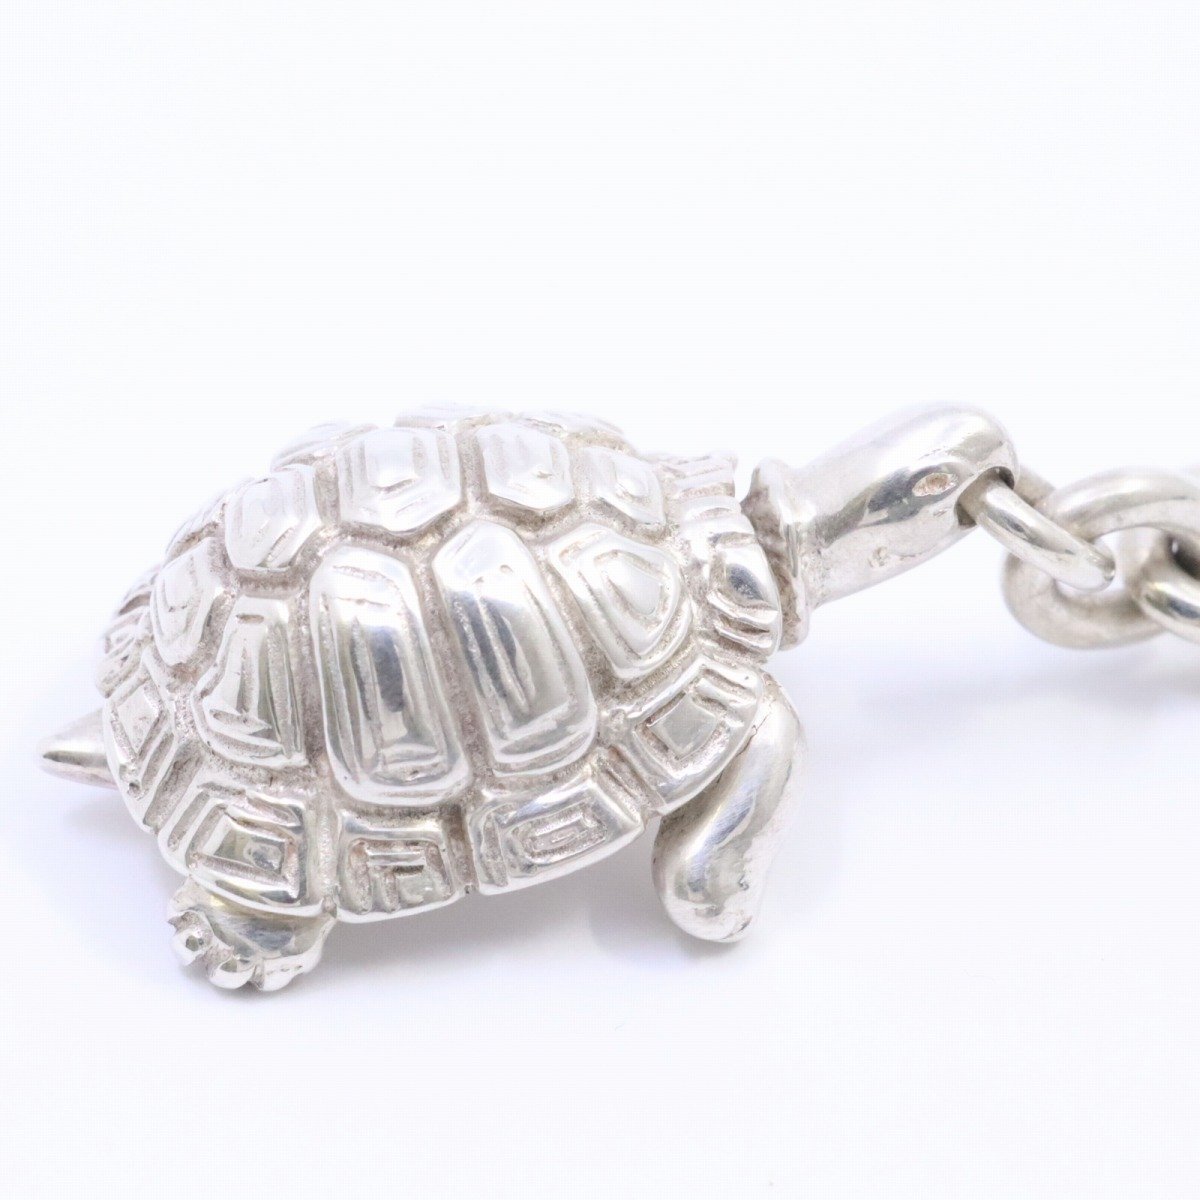 [ редкий товар ]TIFFANY&Co. Tiffany черепаха ta-toru кольцо для ключей брелок для ключа серебряный 925[... ломбард ]